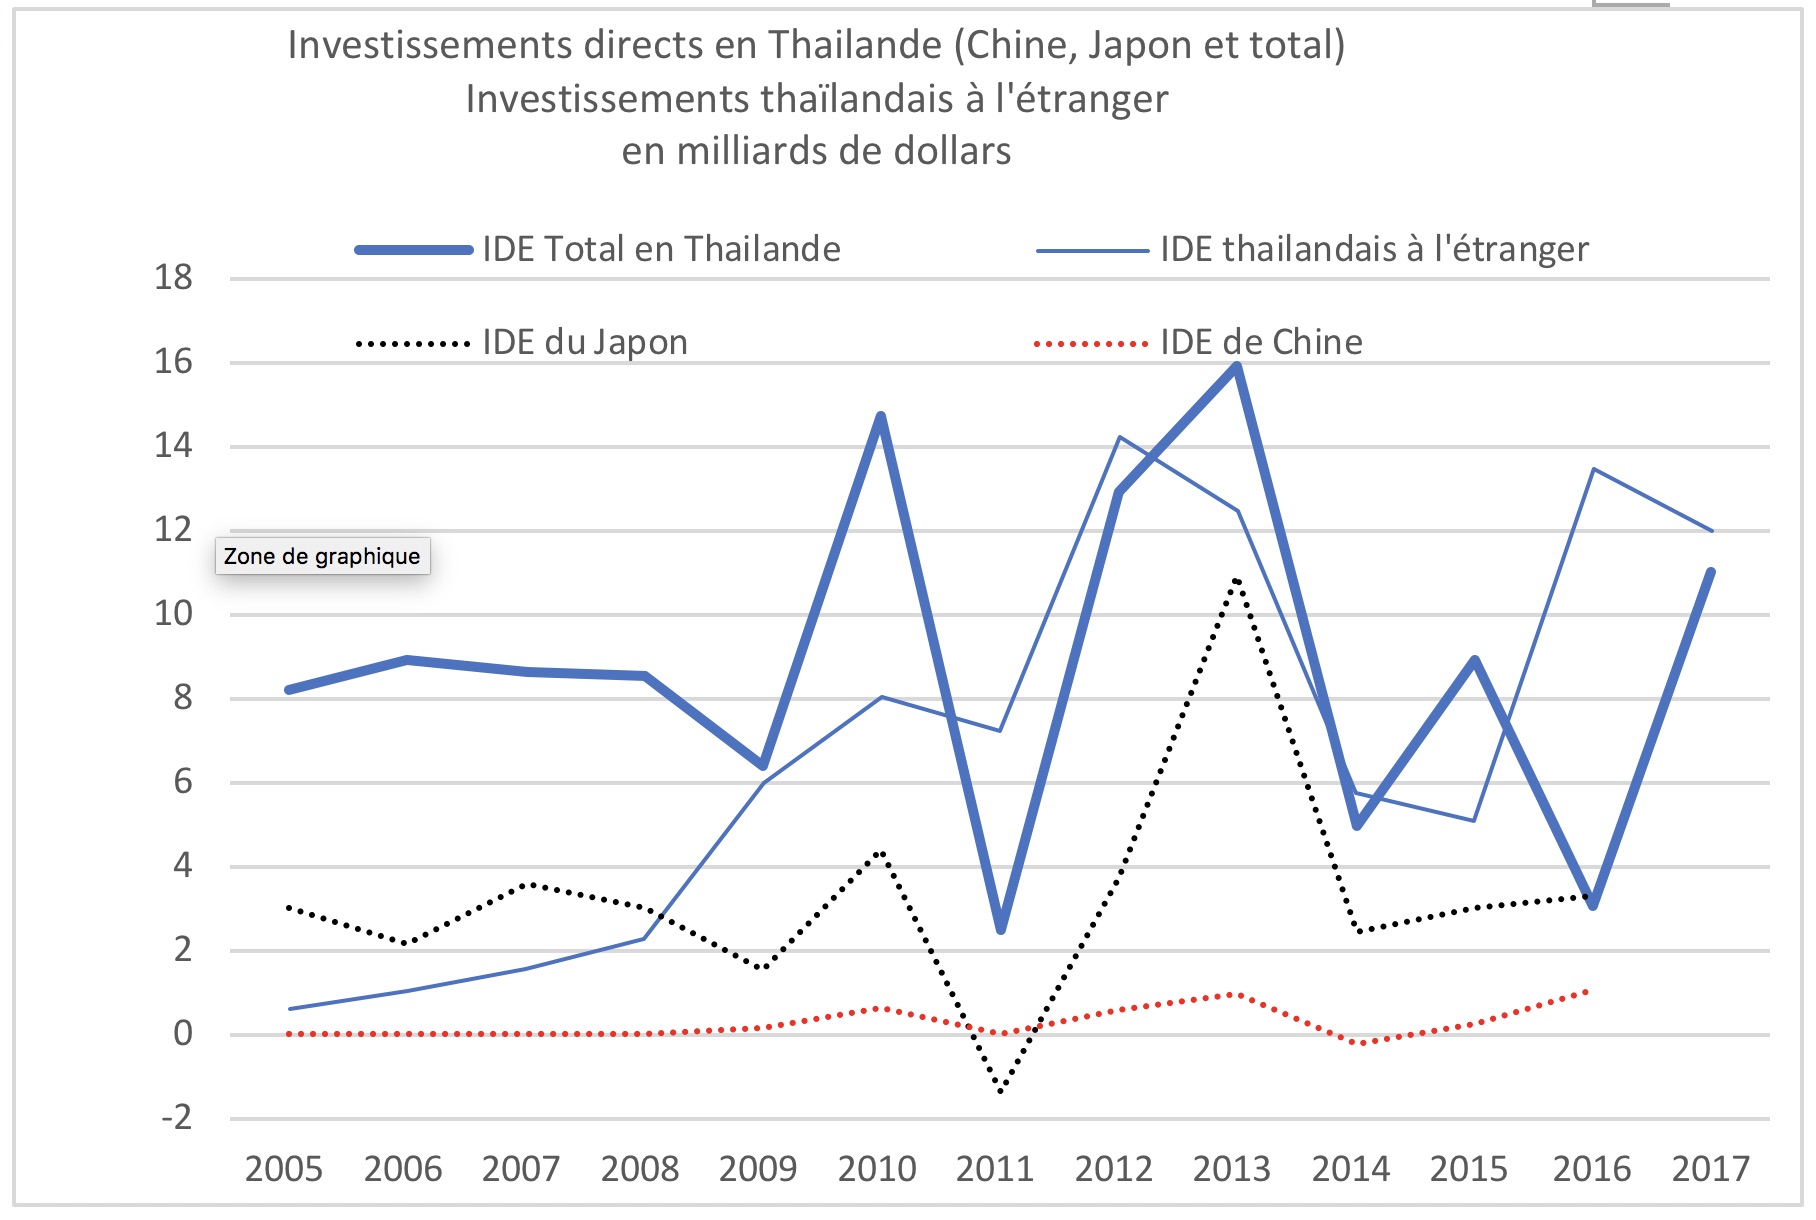 IDE Thailande, Jean-Raphaël Chaponnière, Asie21